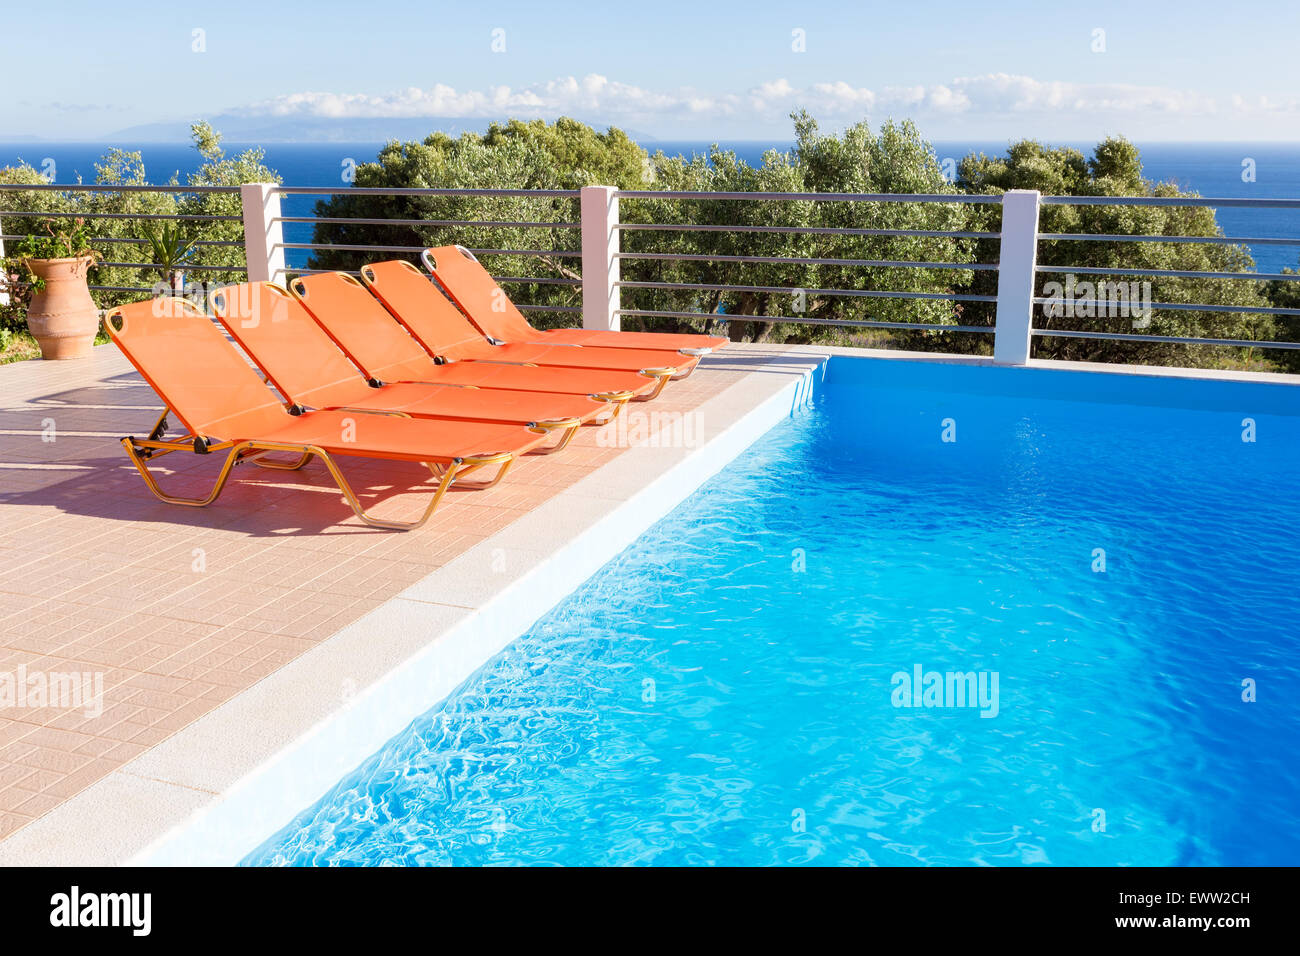 Rangée de chaises longues orange pour se détendre en vacances près de piscine bleu Banque D'Images